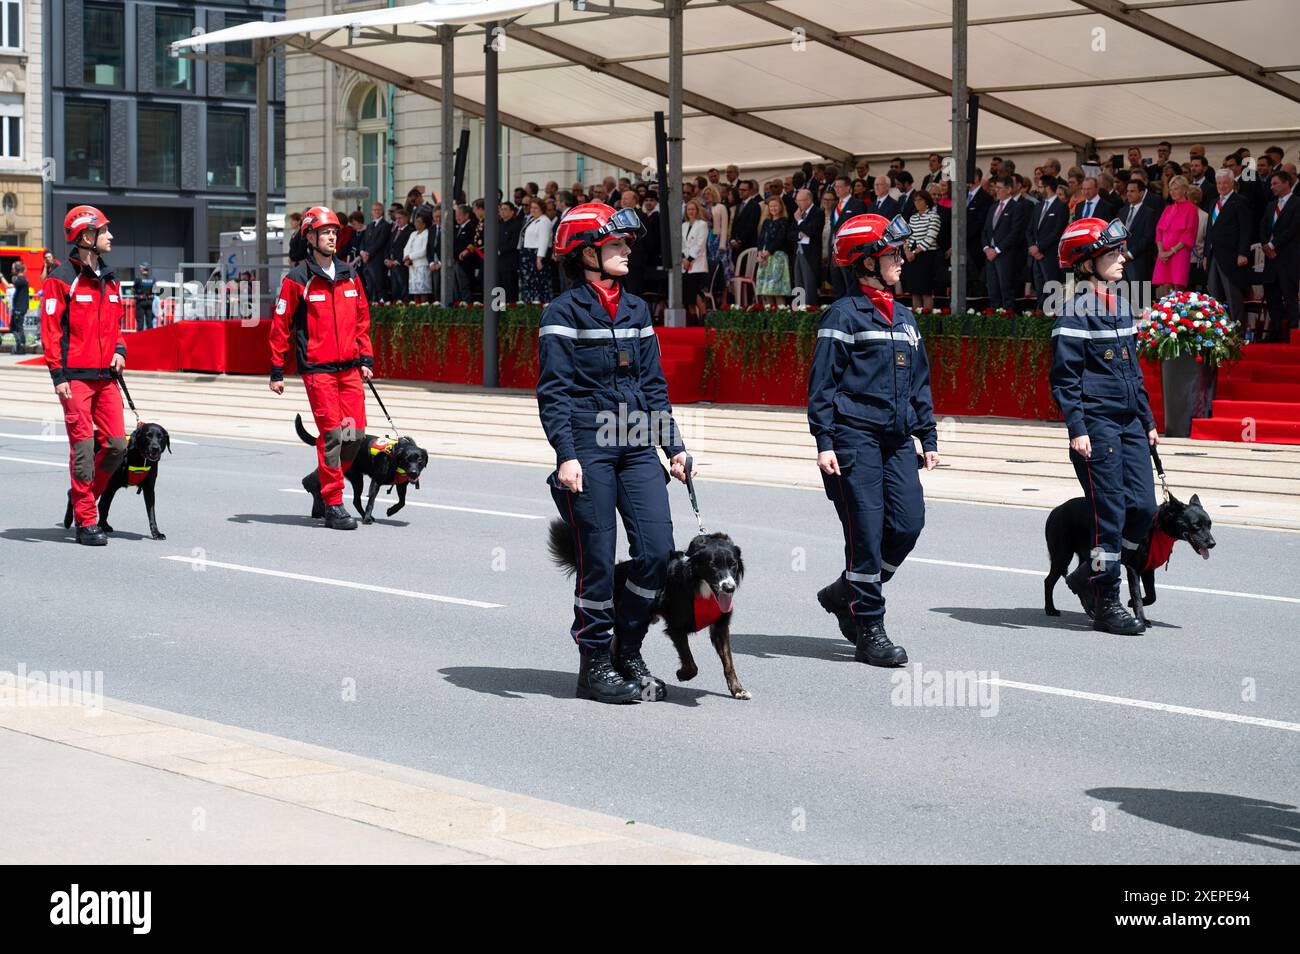 Festa nazionale del Lussemburgo, celebrazione del compleanno del Granduca, sfilata militare con l'esercito lussemburghese, la polizia, i vigili del fuoco, il servizio di soccorso Foto Stock